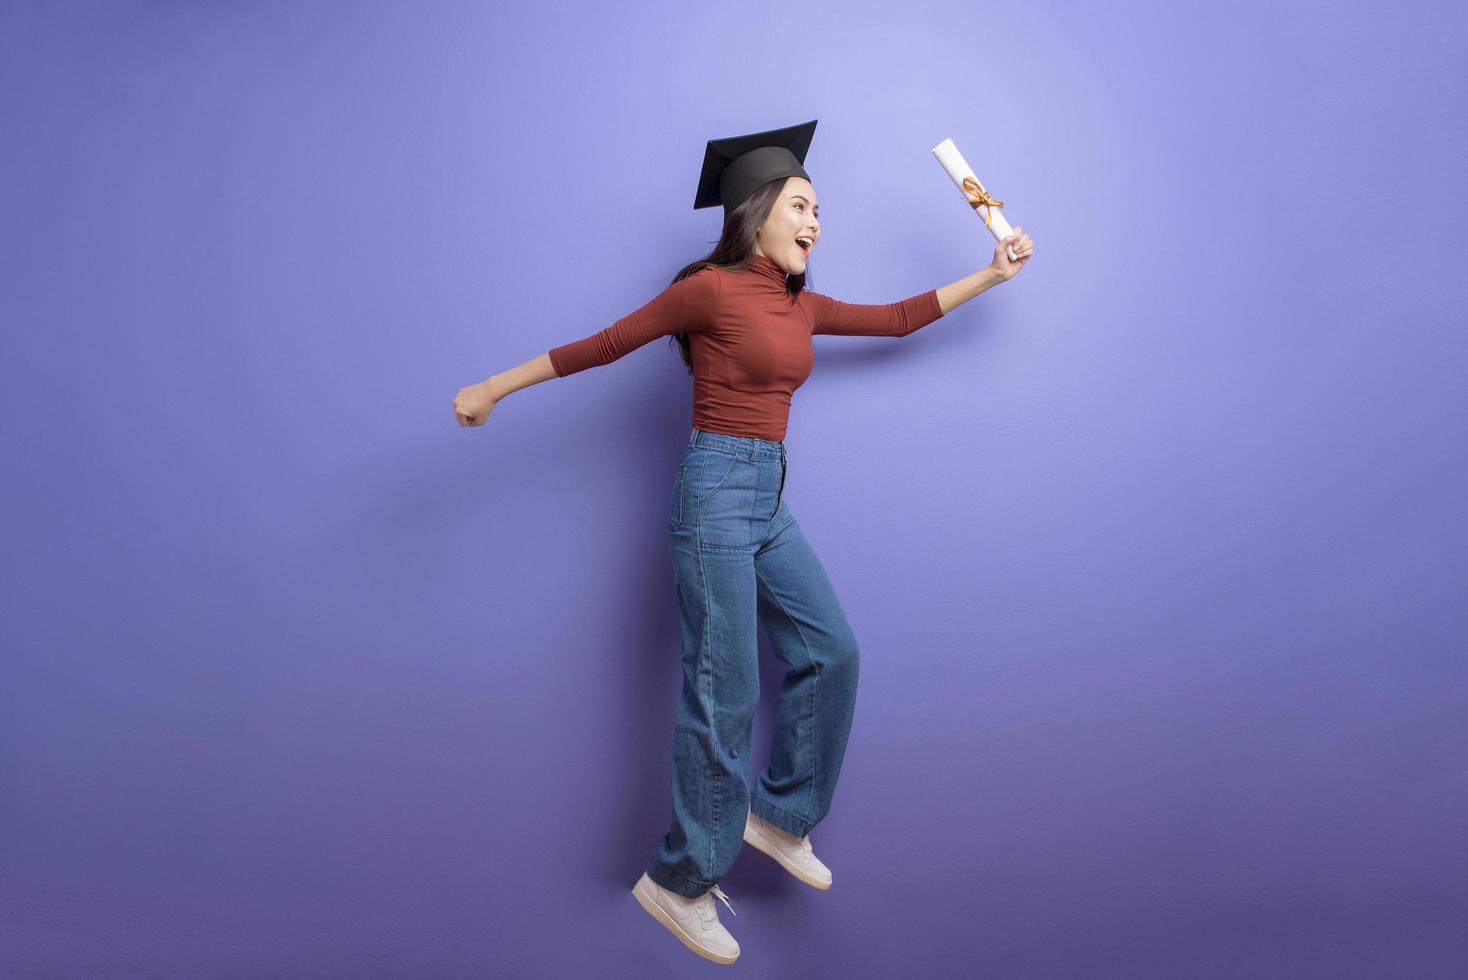 ritratto di giovane studentessa universitaria con cappuccio di laurea su sfondo viola foto